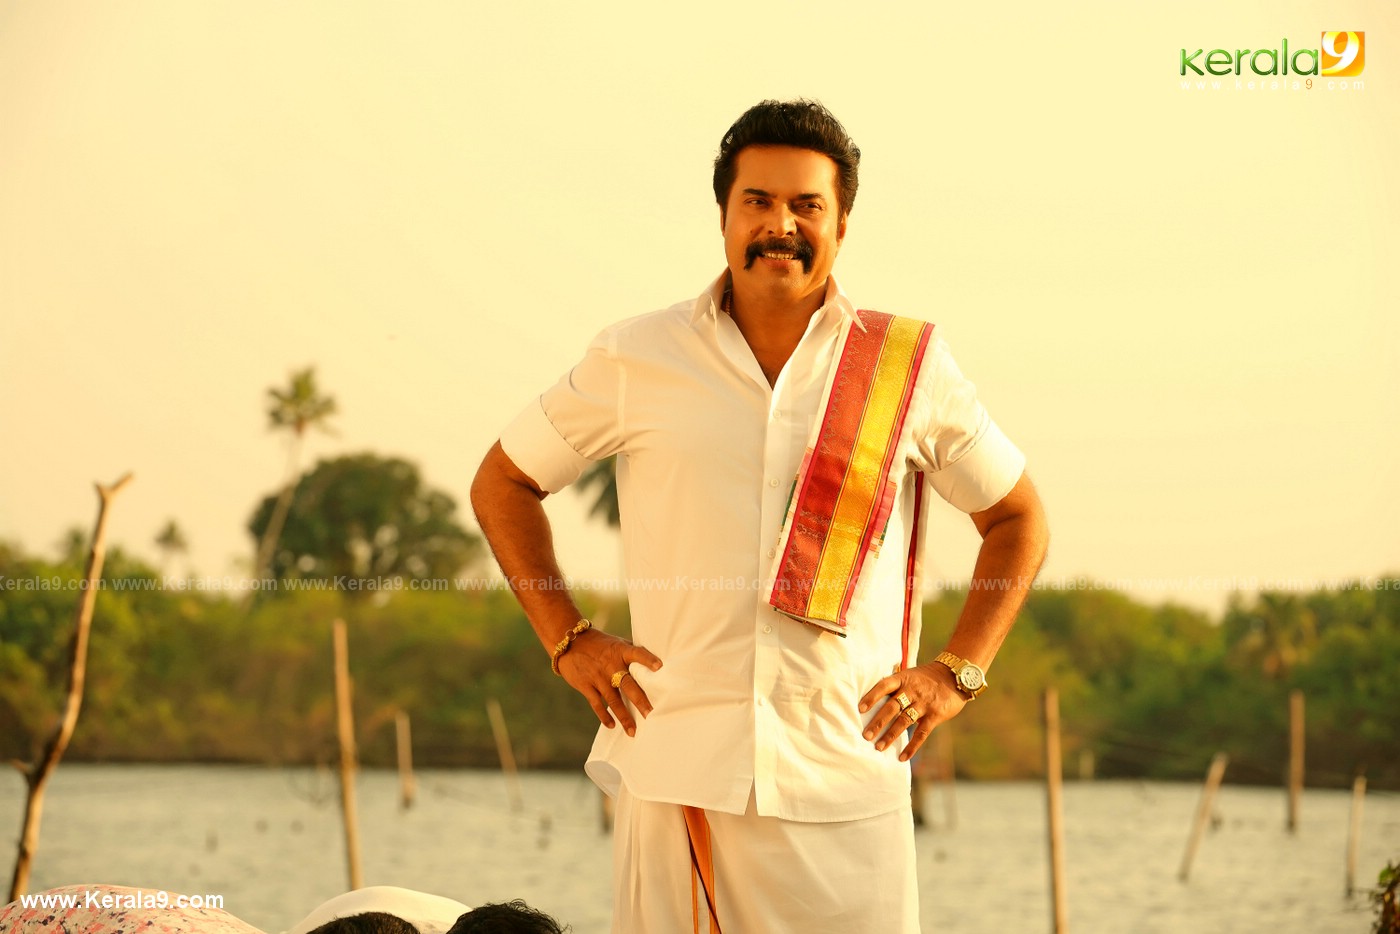 madura raja movie stills 21 - Kerala9.com